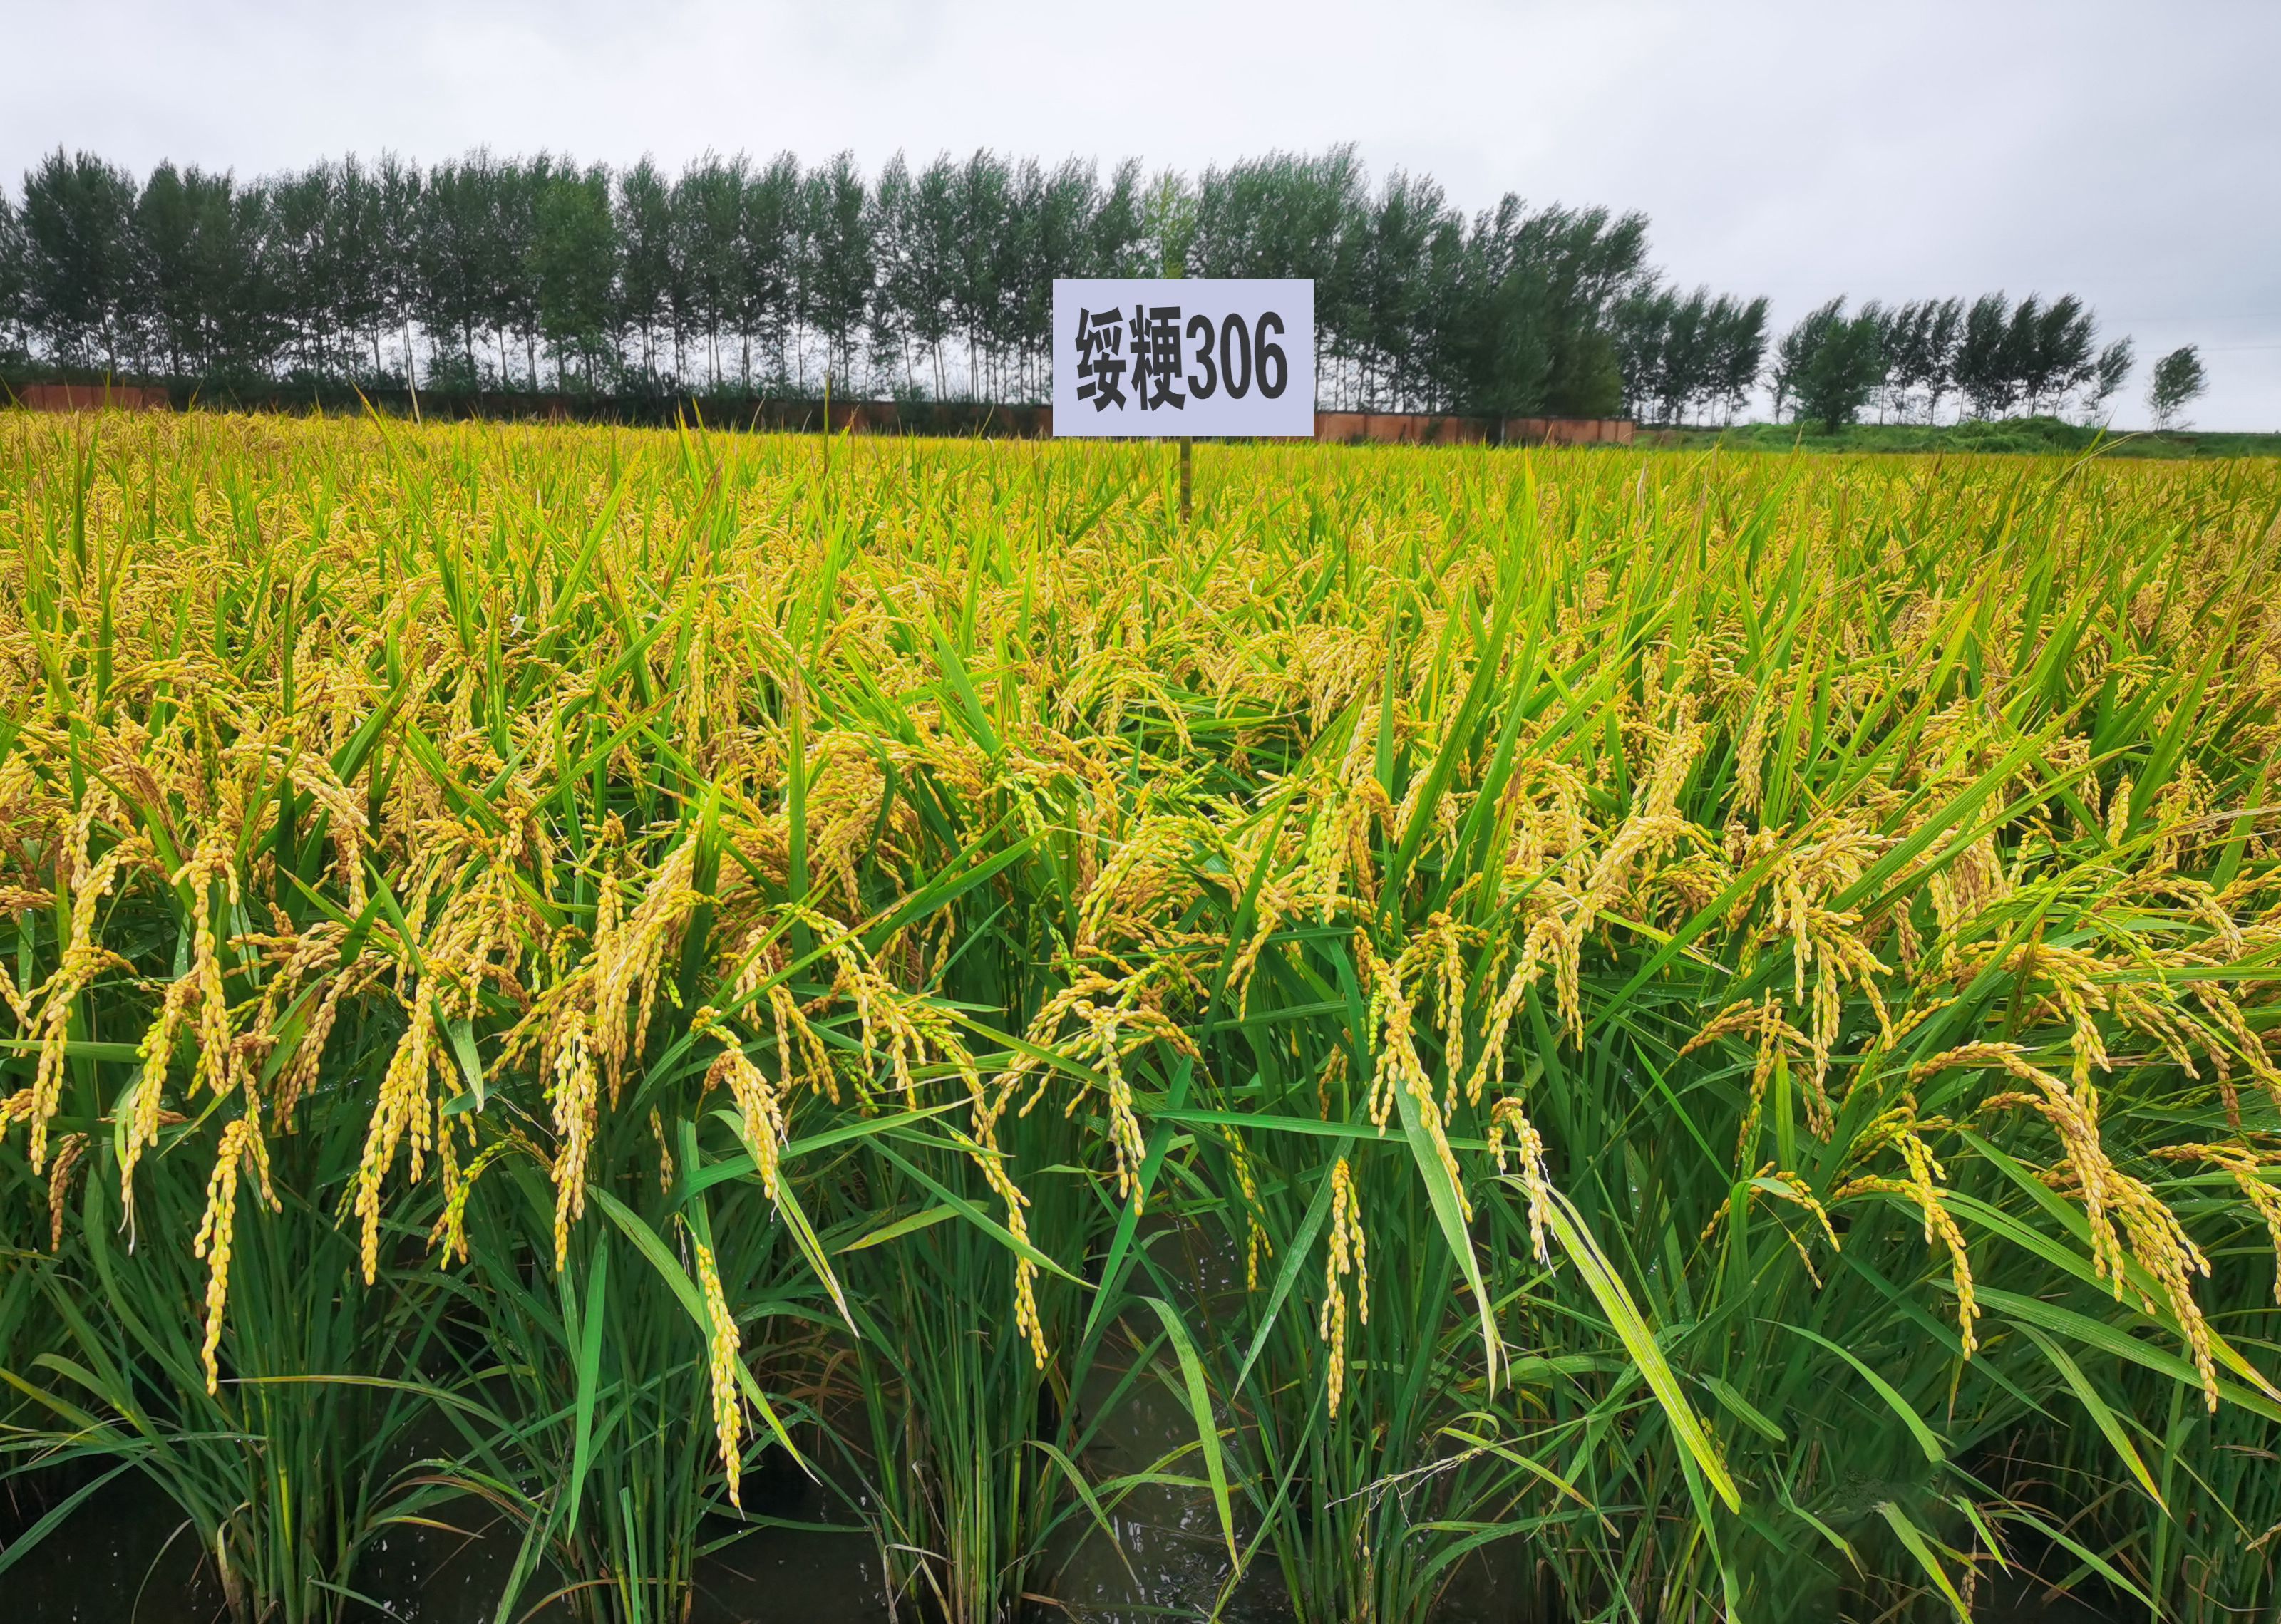 绥粳28水稻种子简介图片